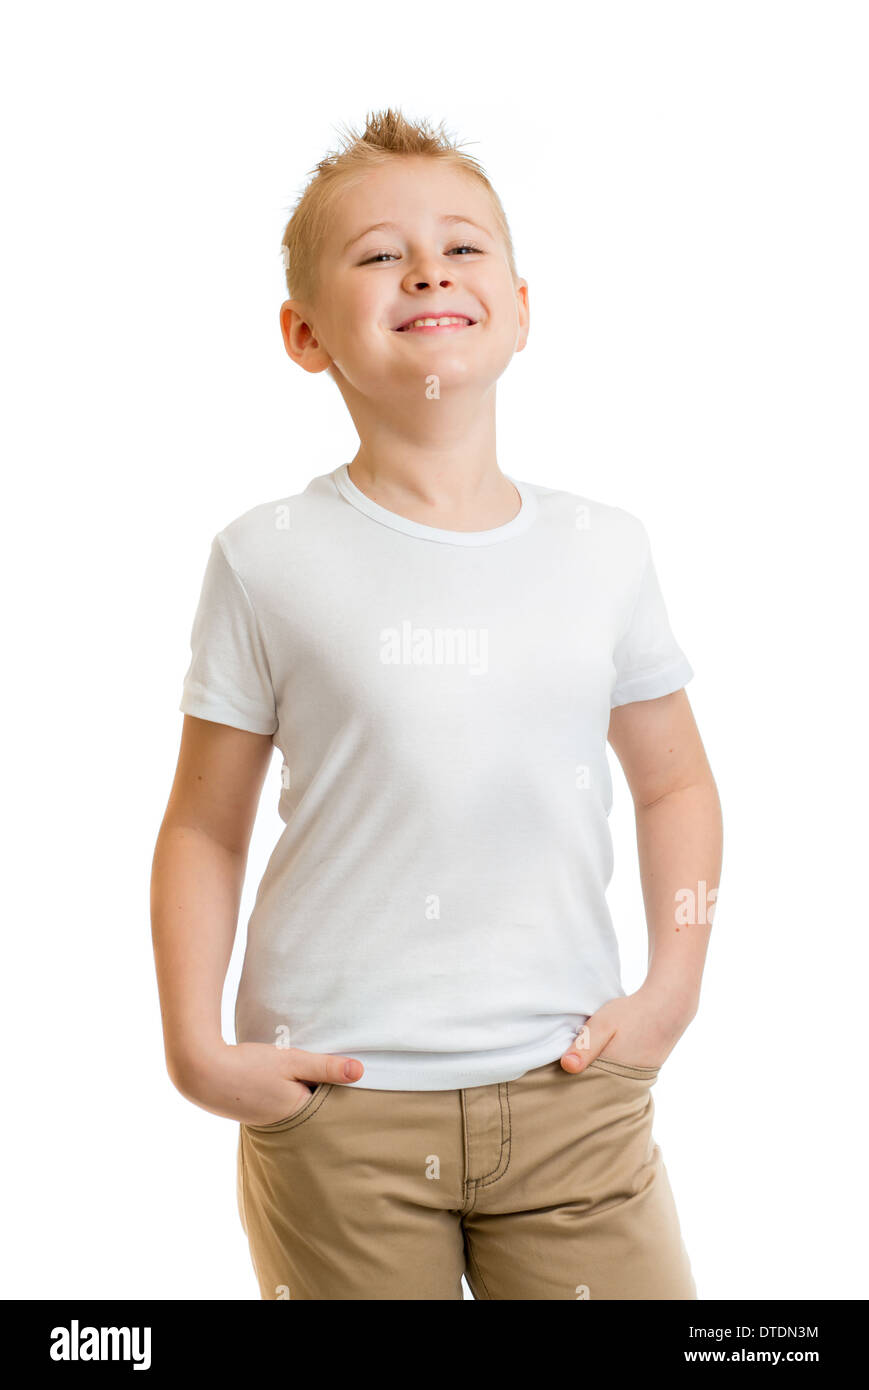 Modell junge im weißen T-shirt oder Tshirt isoliert Stockfoto